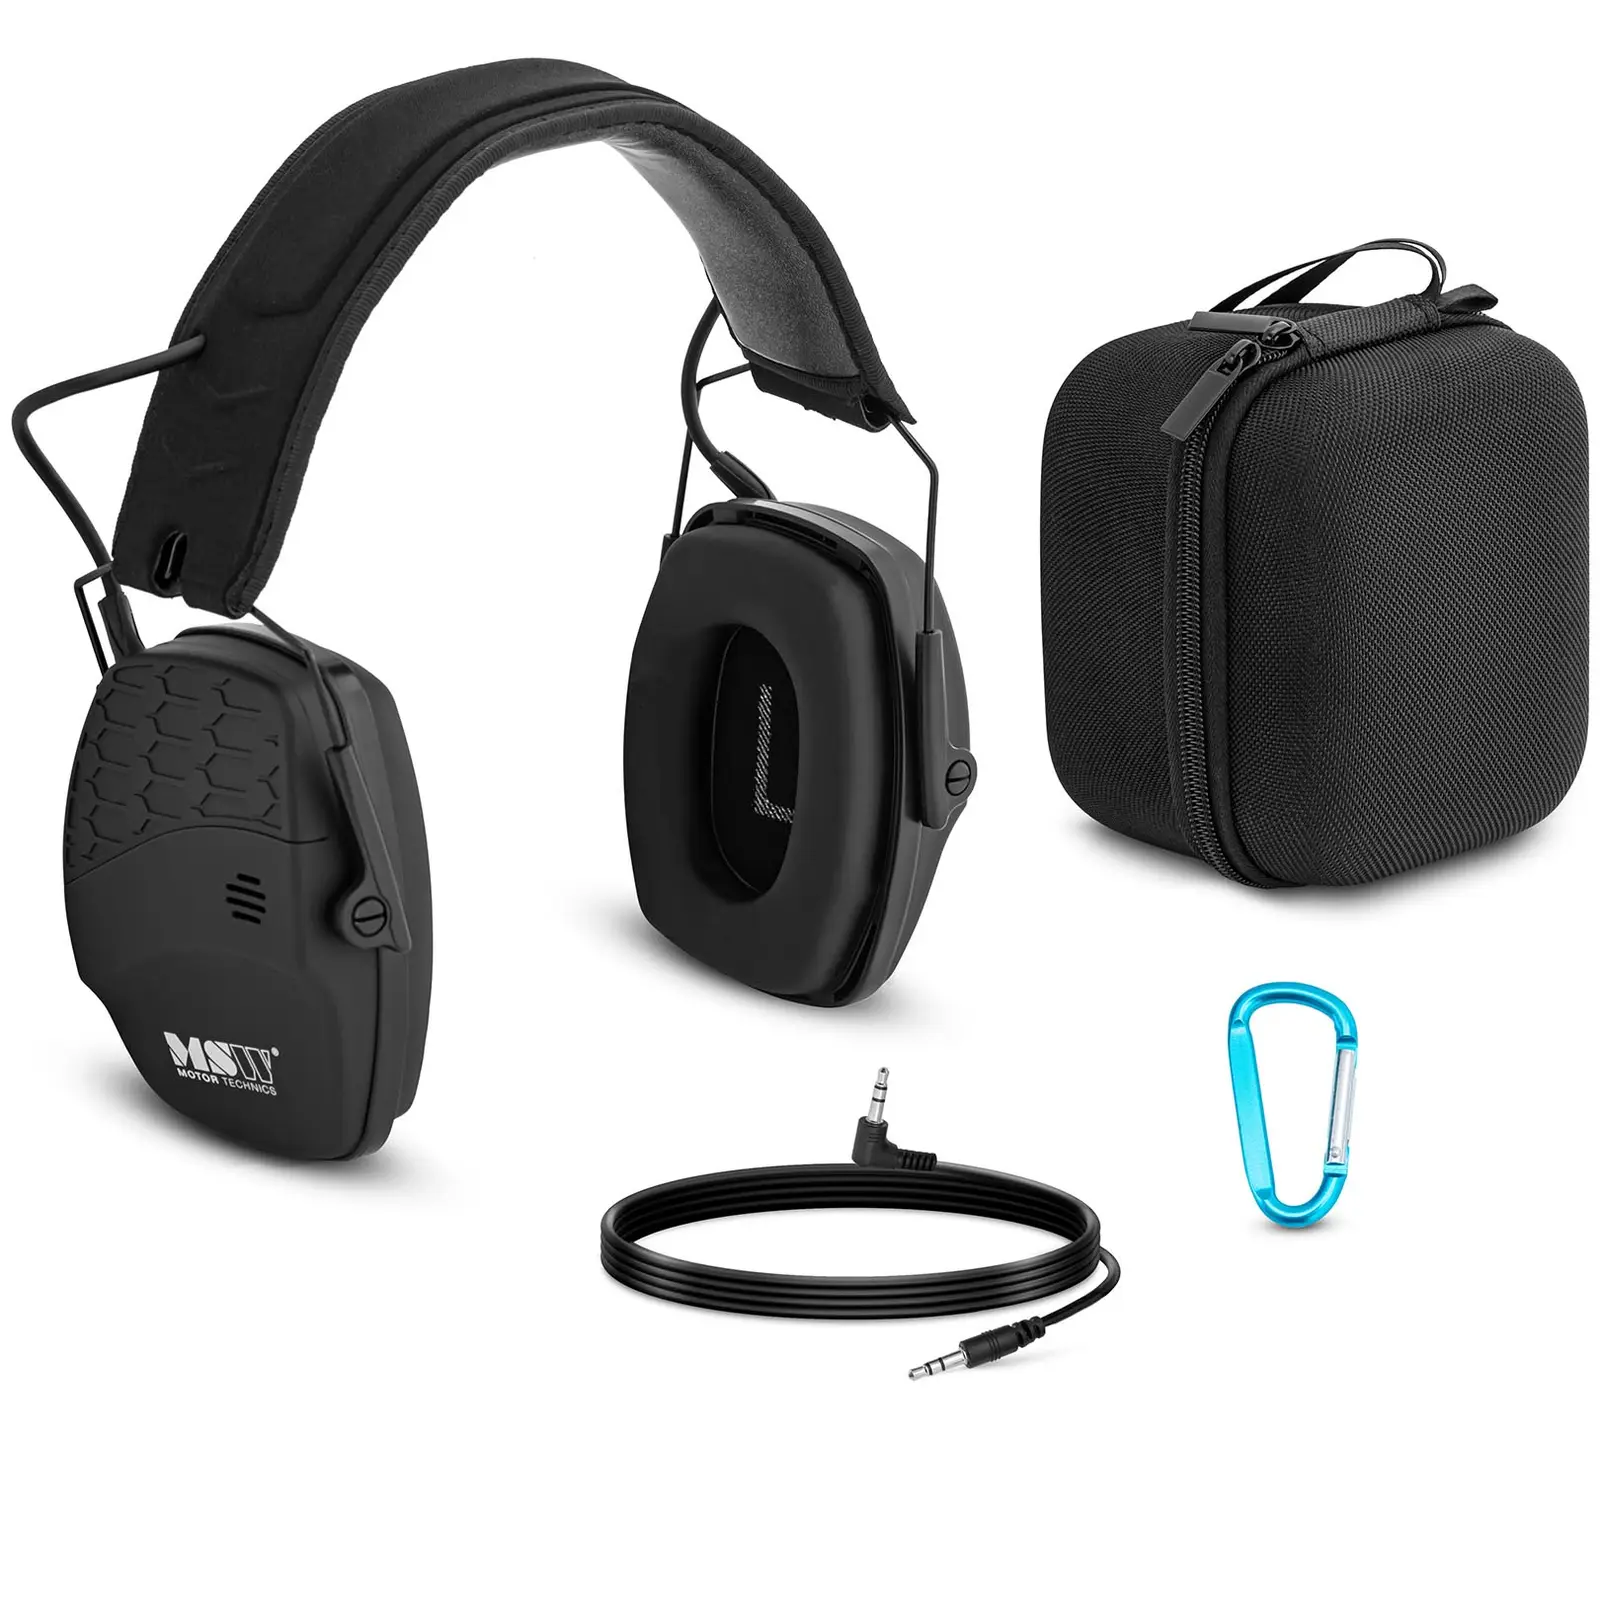 Pracovní sluchátka s Bluetooth - dynamická regulace vnějšího hluku - černá barva